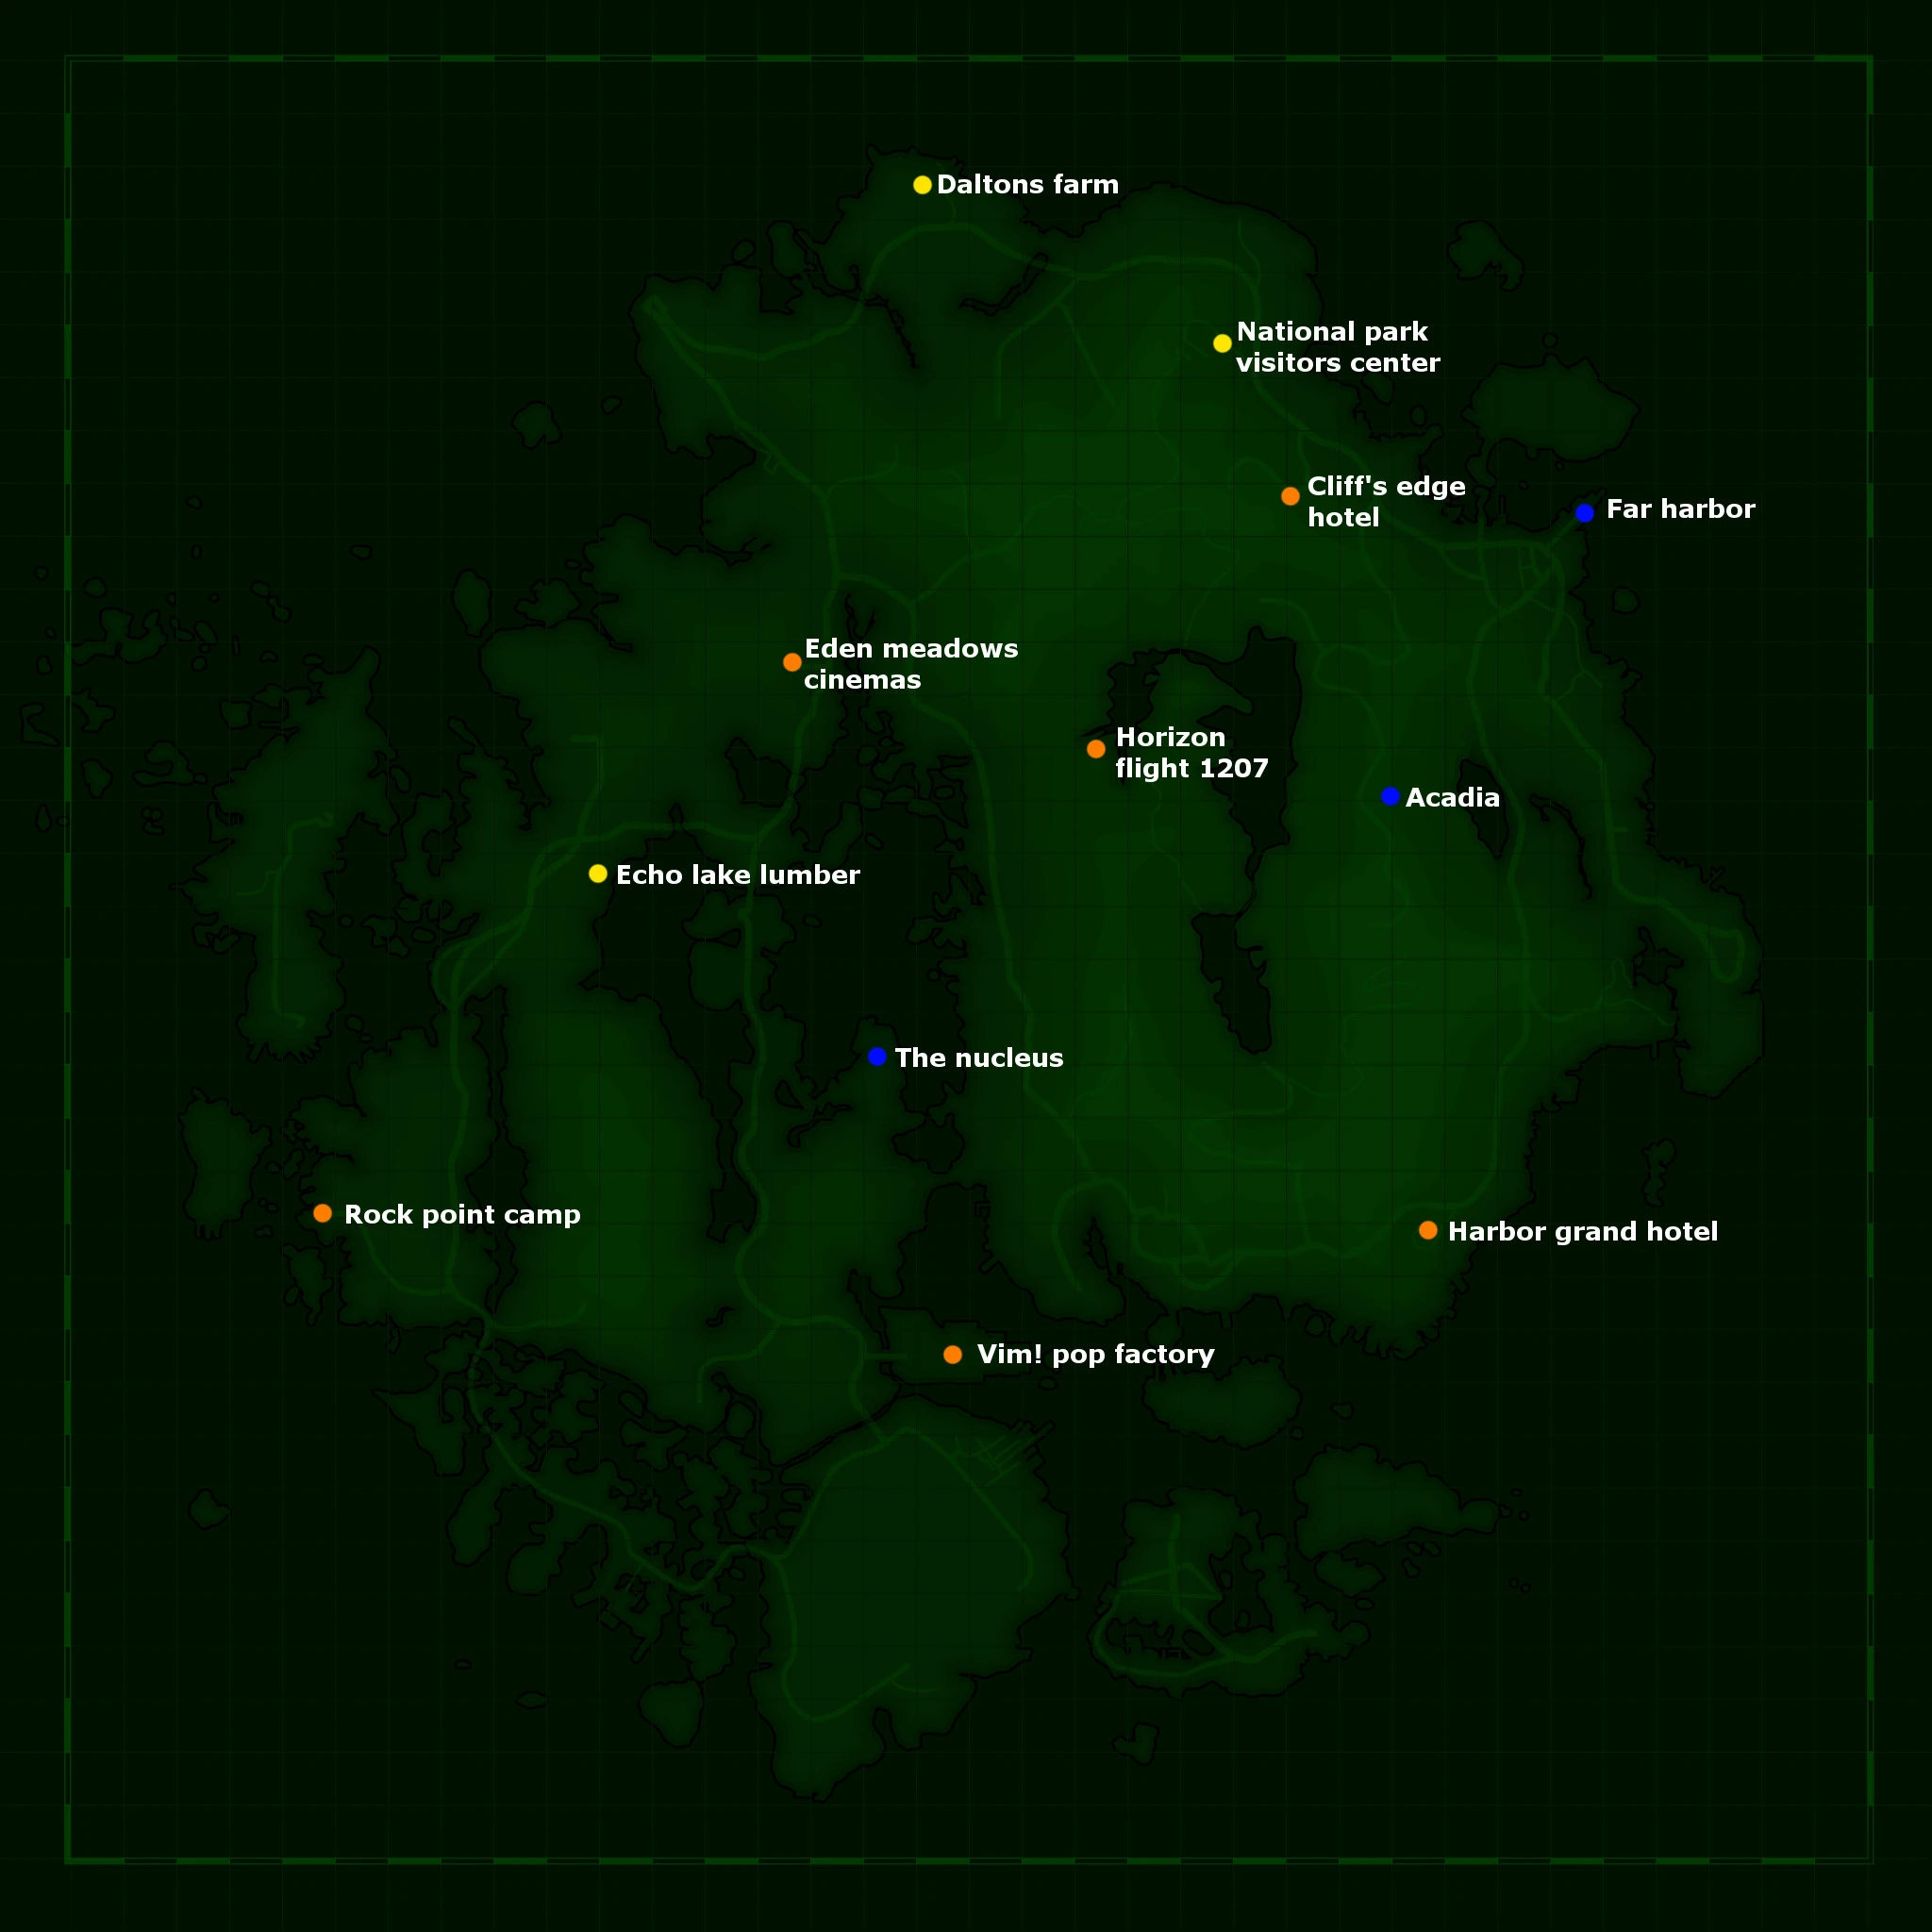 карта фар харбор fallout 4 фото 14